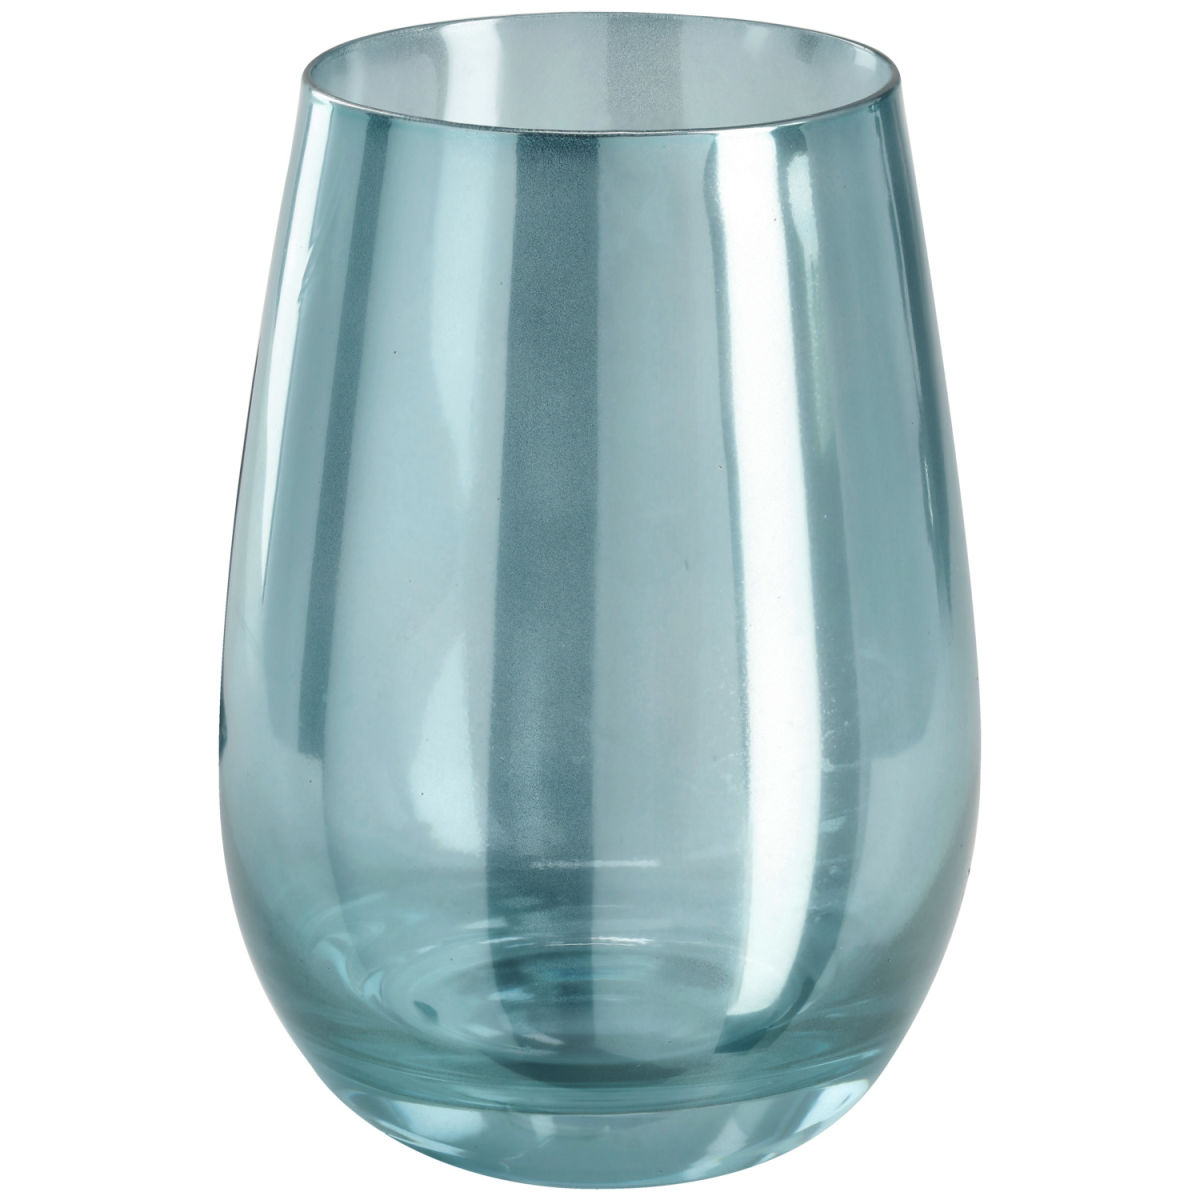 Vega Waterglas Aluna; 500ml, 8.2x12.3 cm (ØxH); blauw; 6 stuk / verpakking